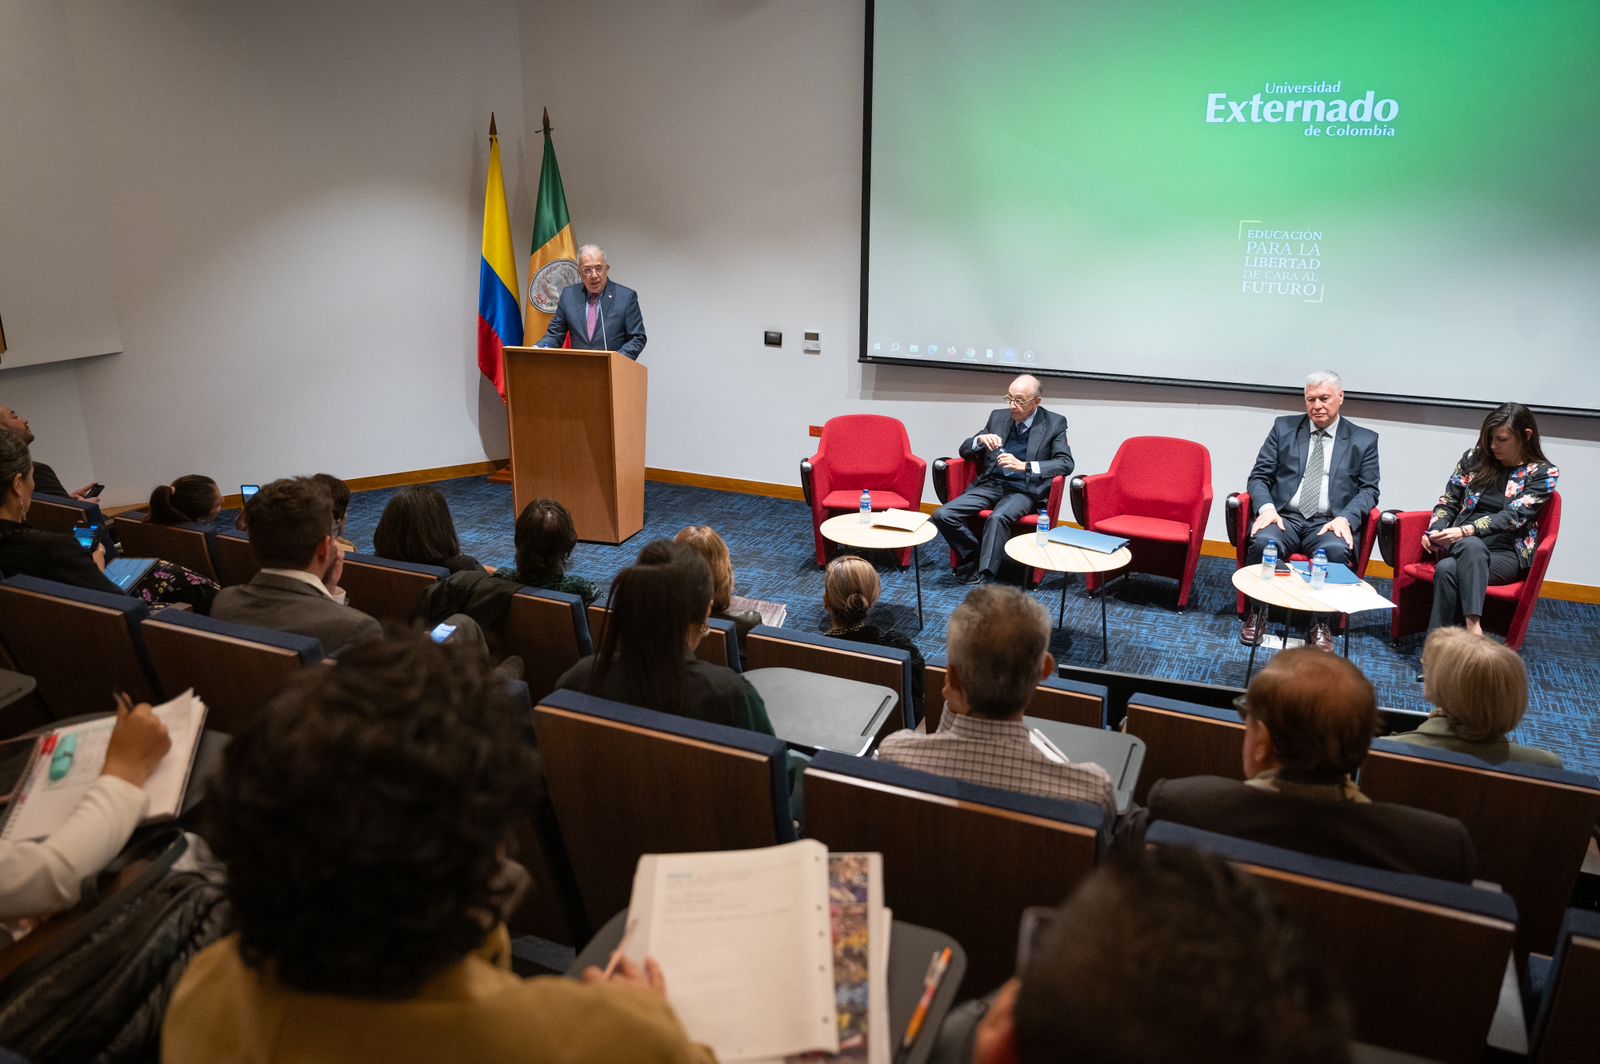 La Primera Cátedra Clemencia Forero Ucrós fue escenario para reafirmar el papel de Colombia en temas como paz y medio ambiente, además del liderazgo que está consolidando en la región